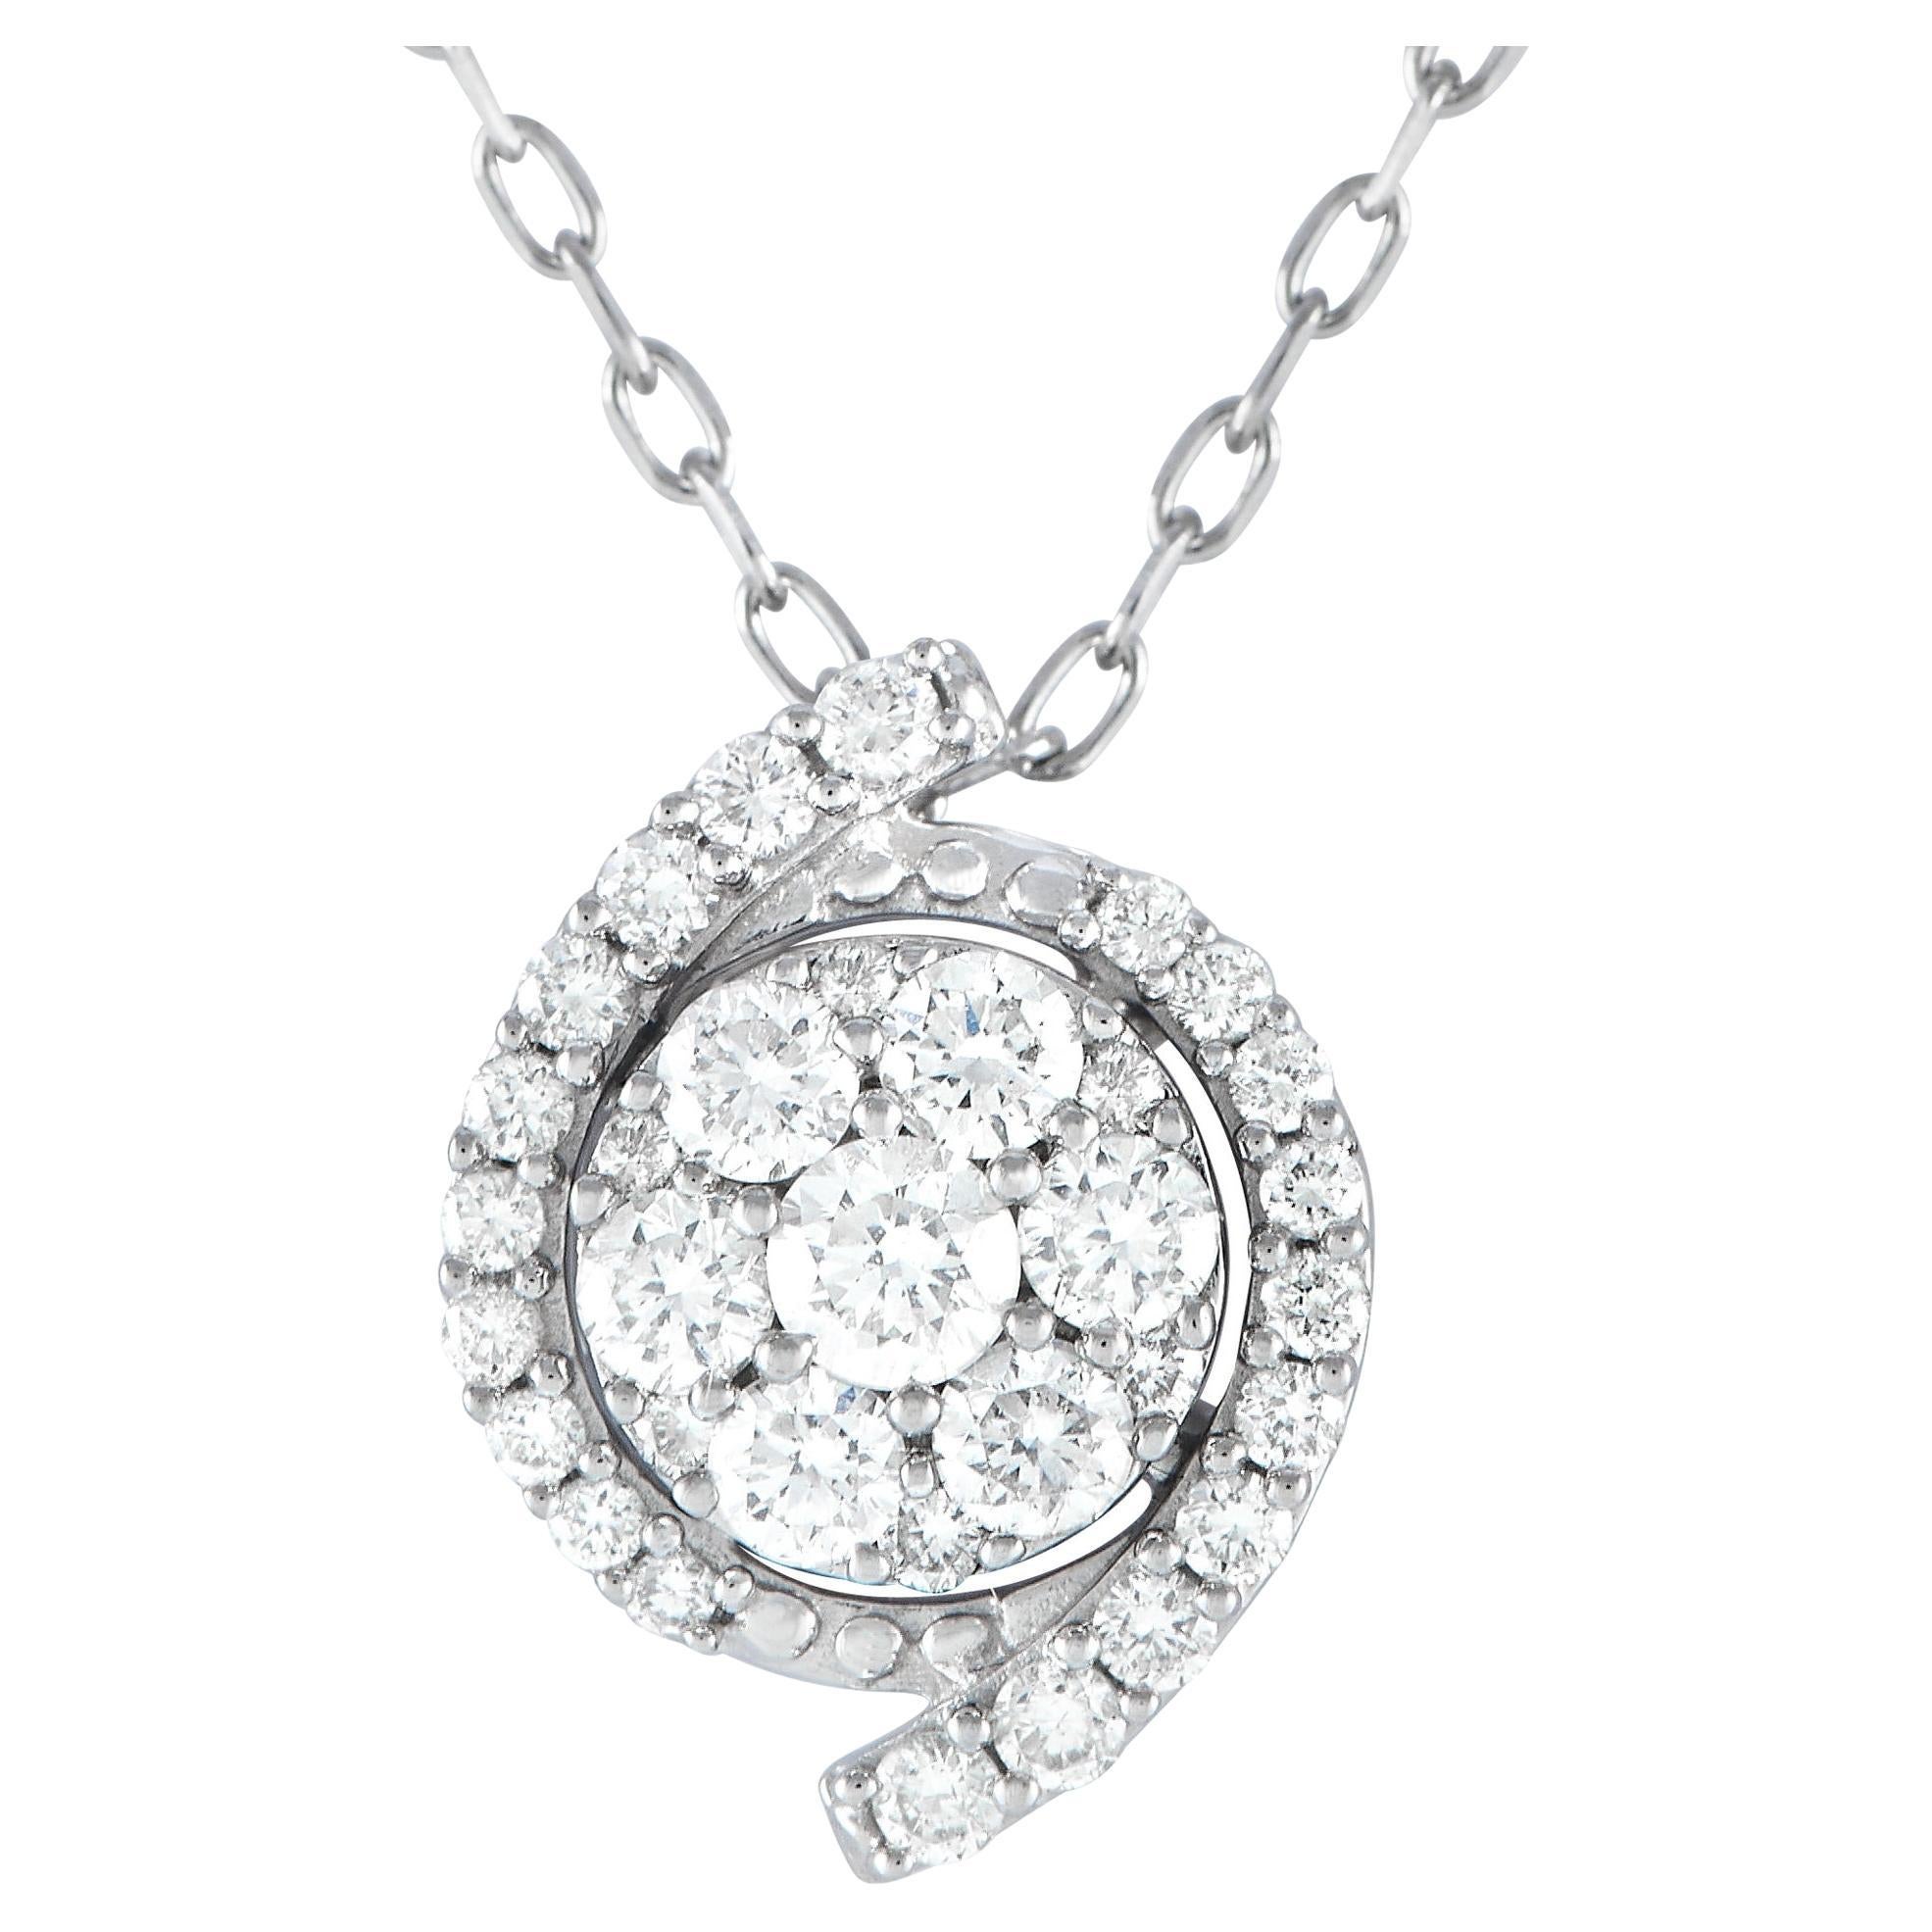 LB Exclusive 14k White Gold 0.40 Carat Diamond Pendant Necklace